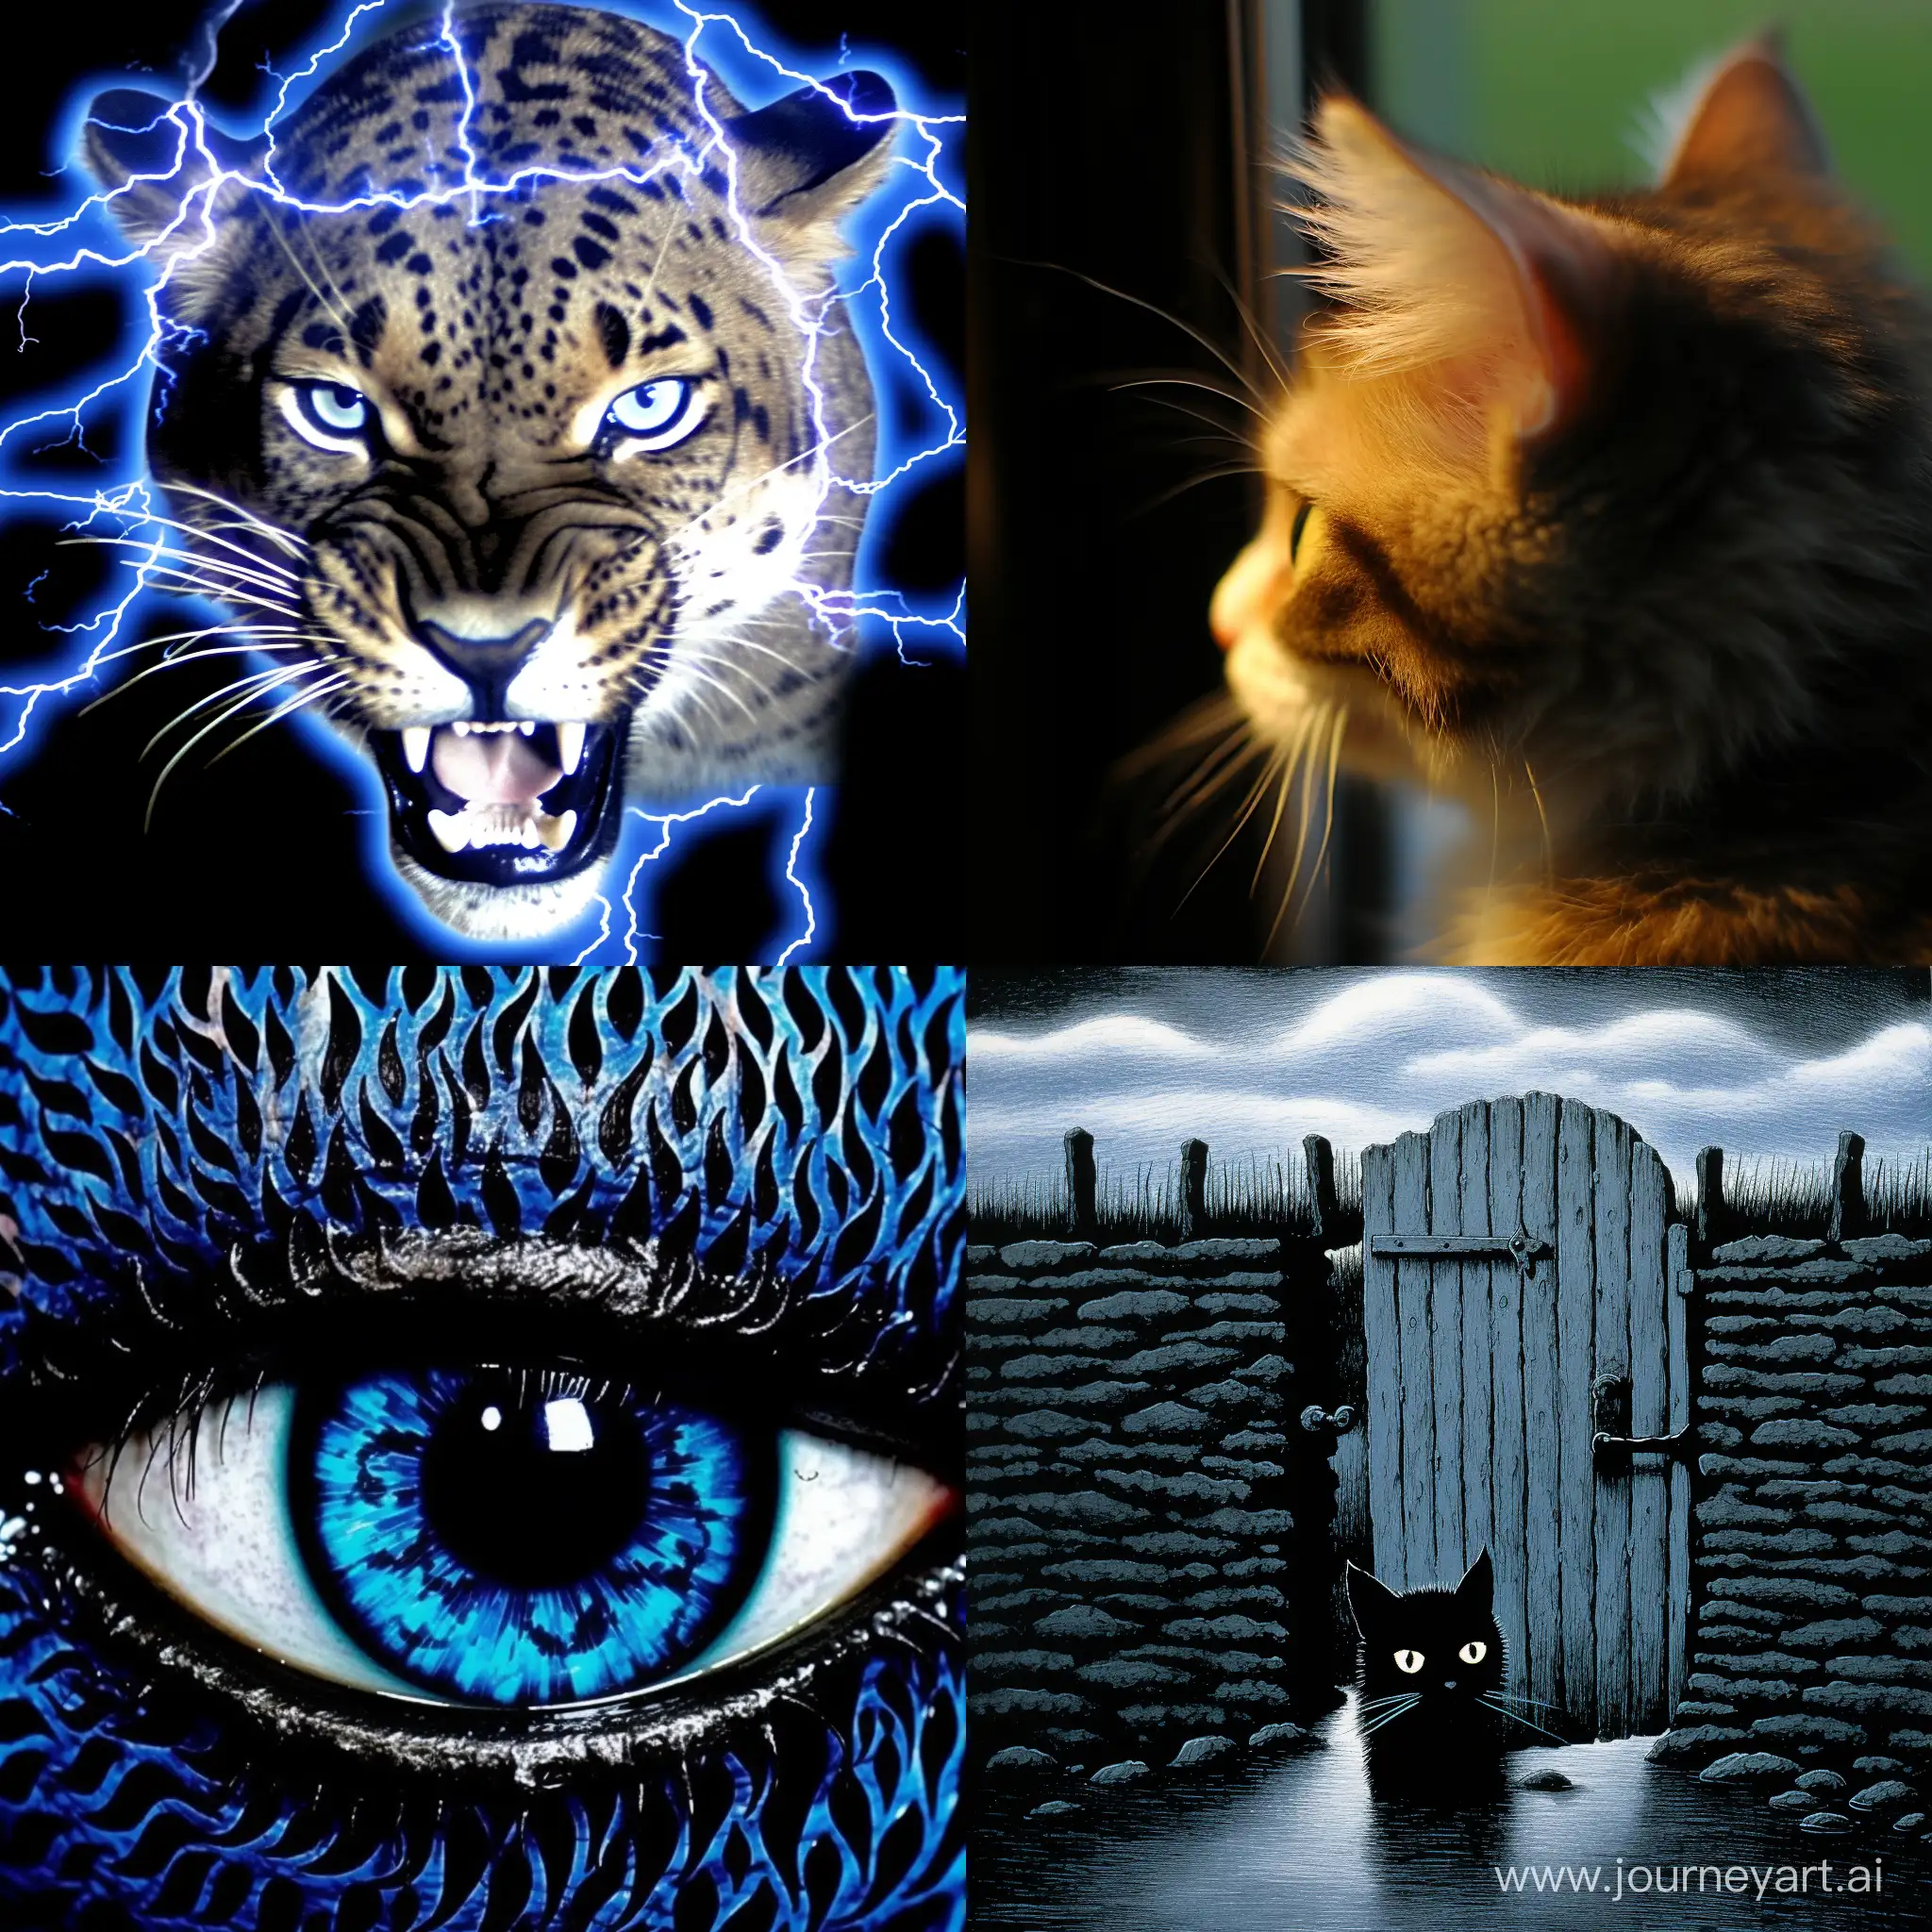 movie poster fantasy cinematic lighting, ::1.3, голубая кошка с черными узорами на фоне окна, свет проникает через окна отбрасывая блики на кошку, --chaos 100